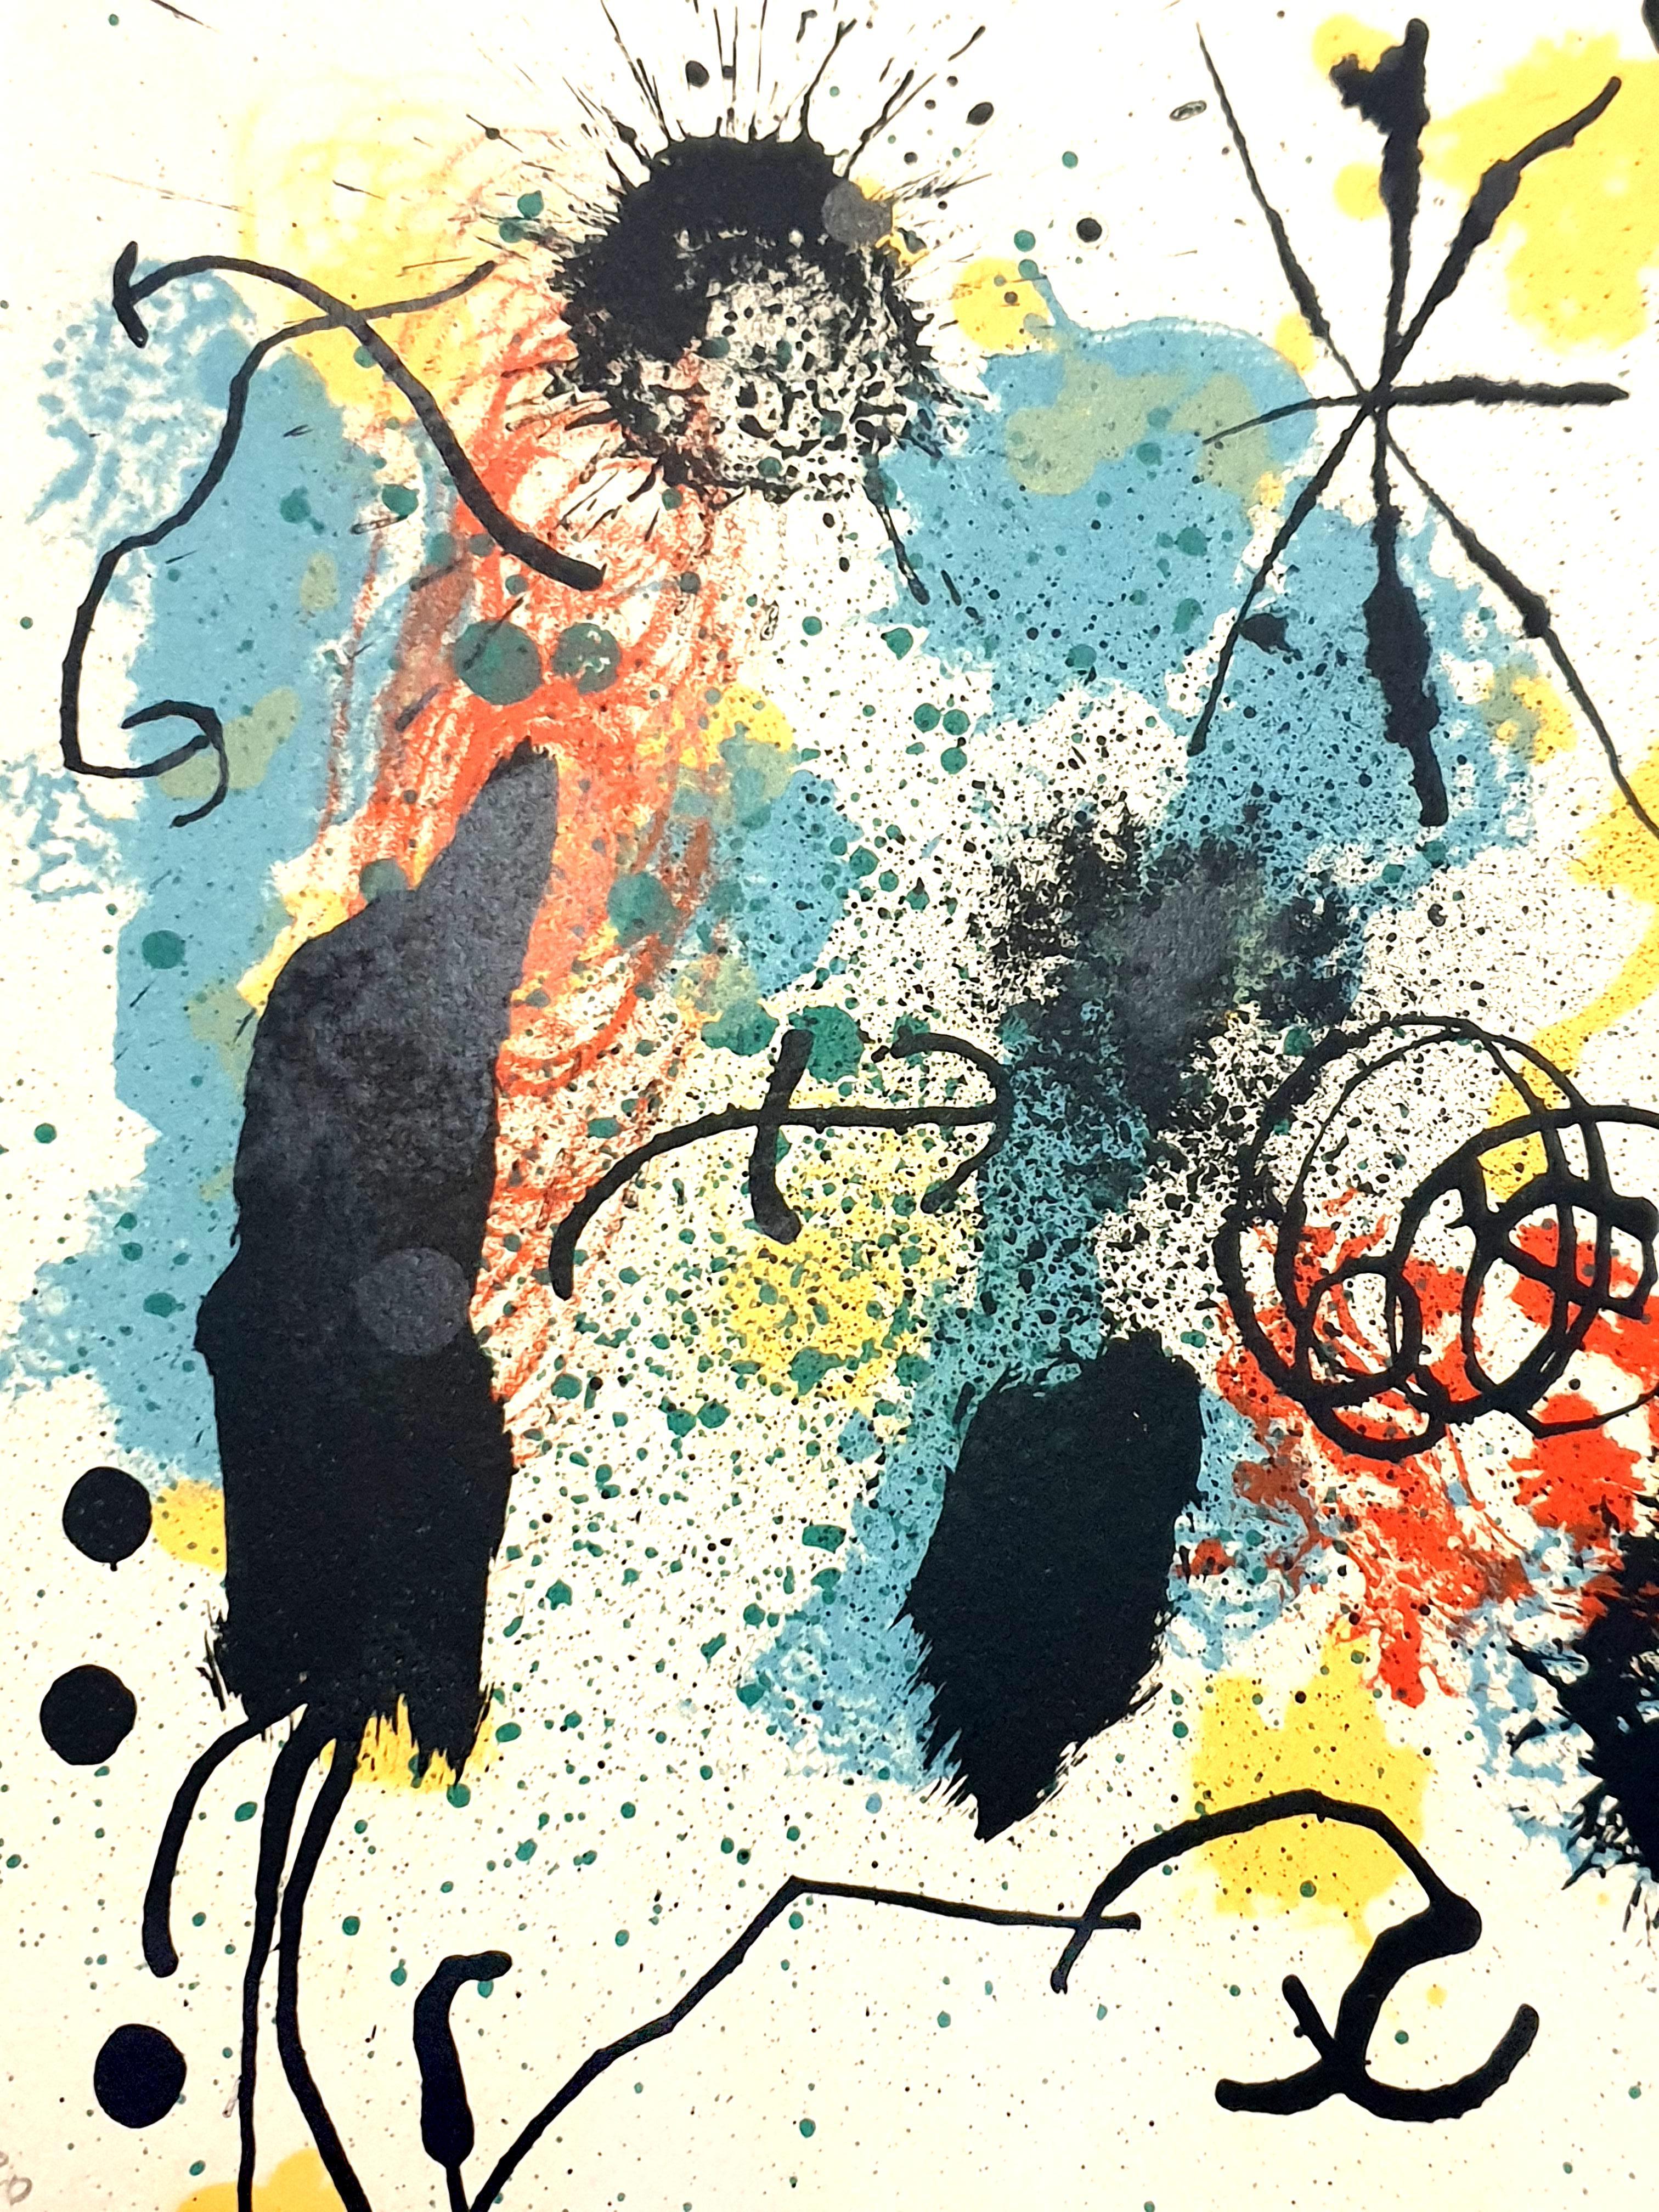 Joan Miro - I Work Like a Gardener - Lithographie originale signée à la main
Année : 1964
Signé et numéroté au crayon
Edition : 2 / 30
Imprimeur : Mourlot, Paris
Dimensions : 22,5 x 23 cm : 22,5 x 23 cm
Référence : Mourlot 347
Provenance : Galleria